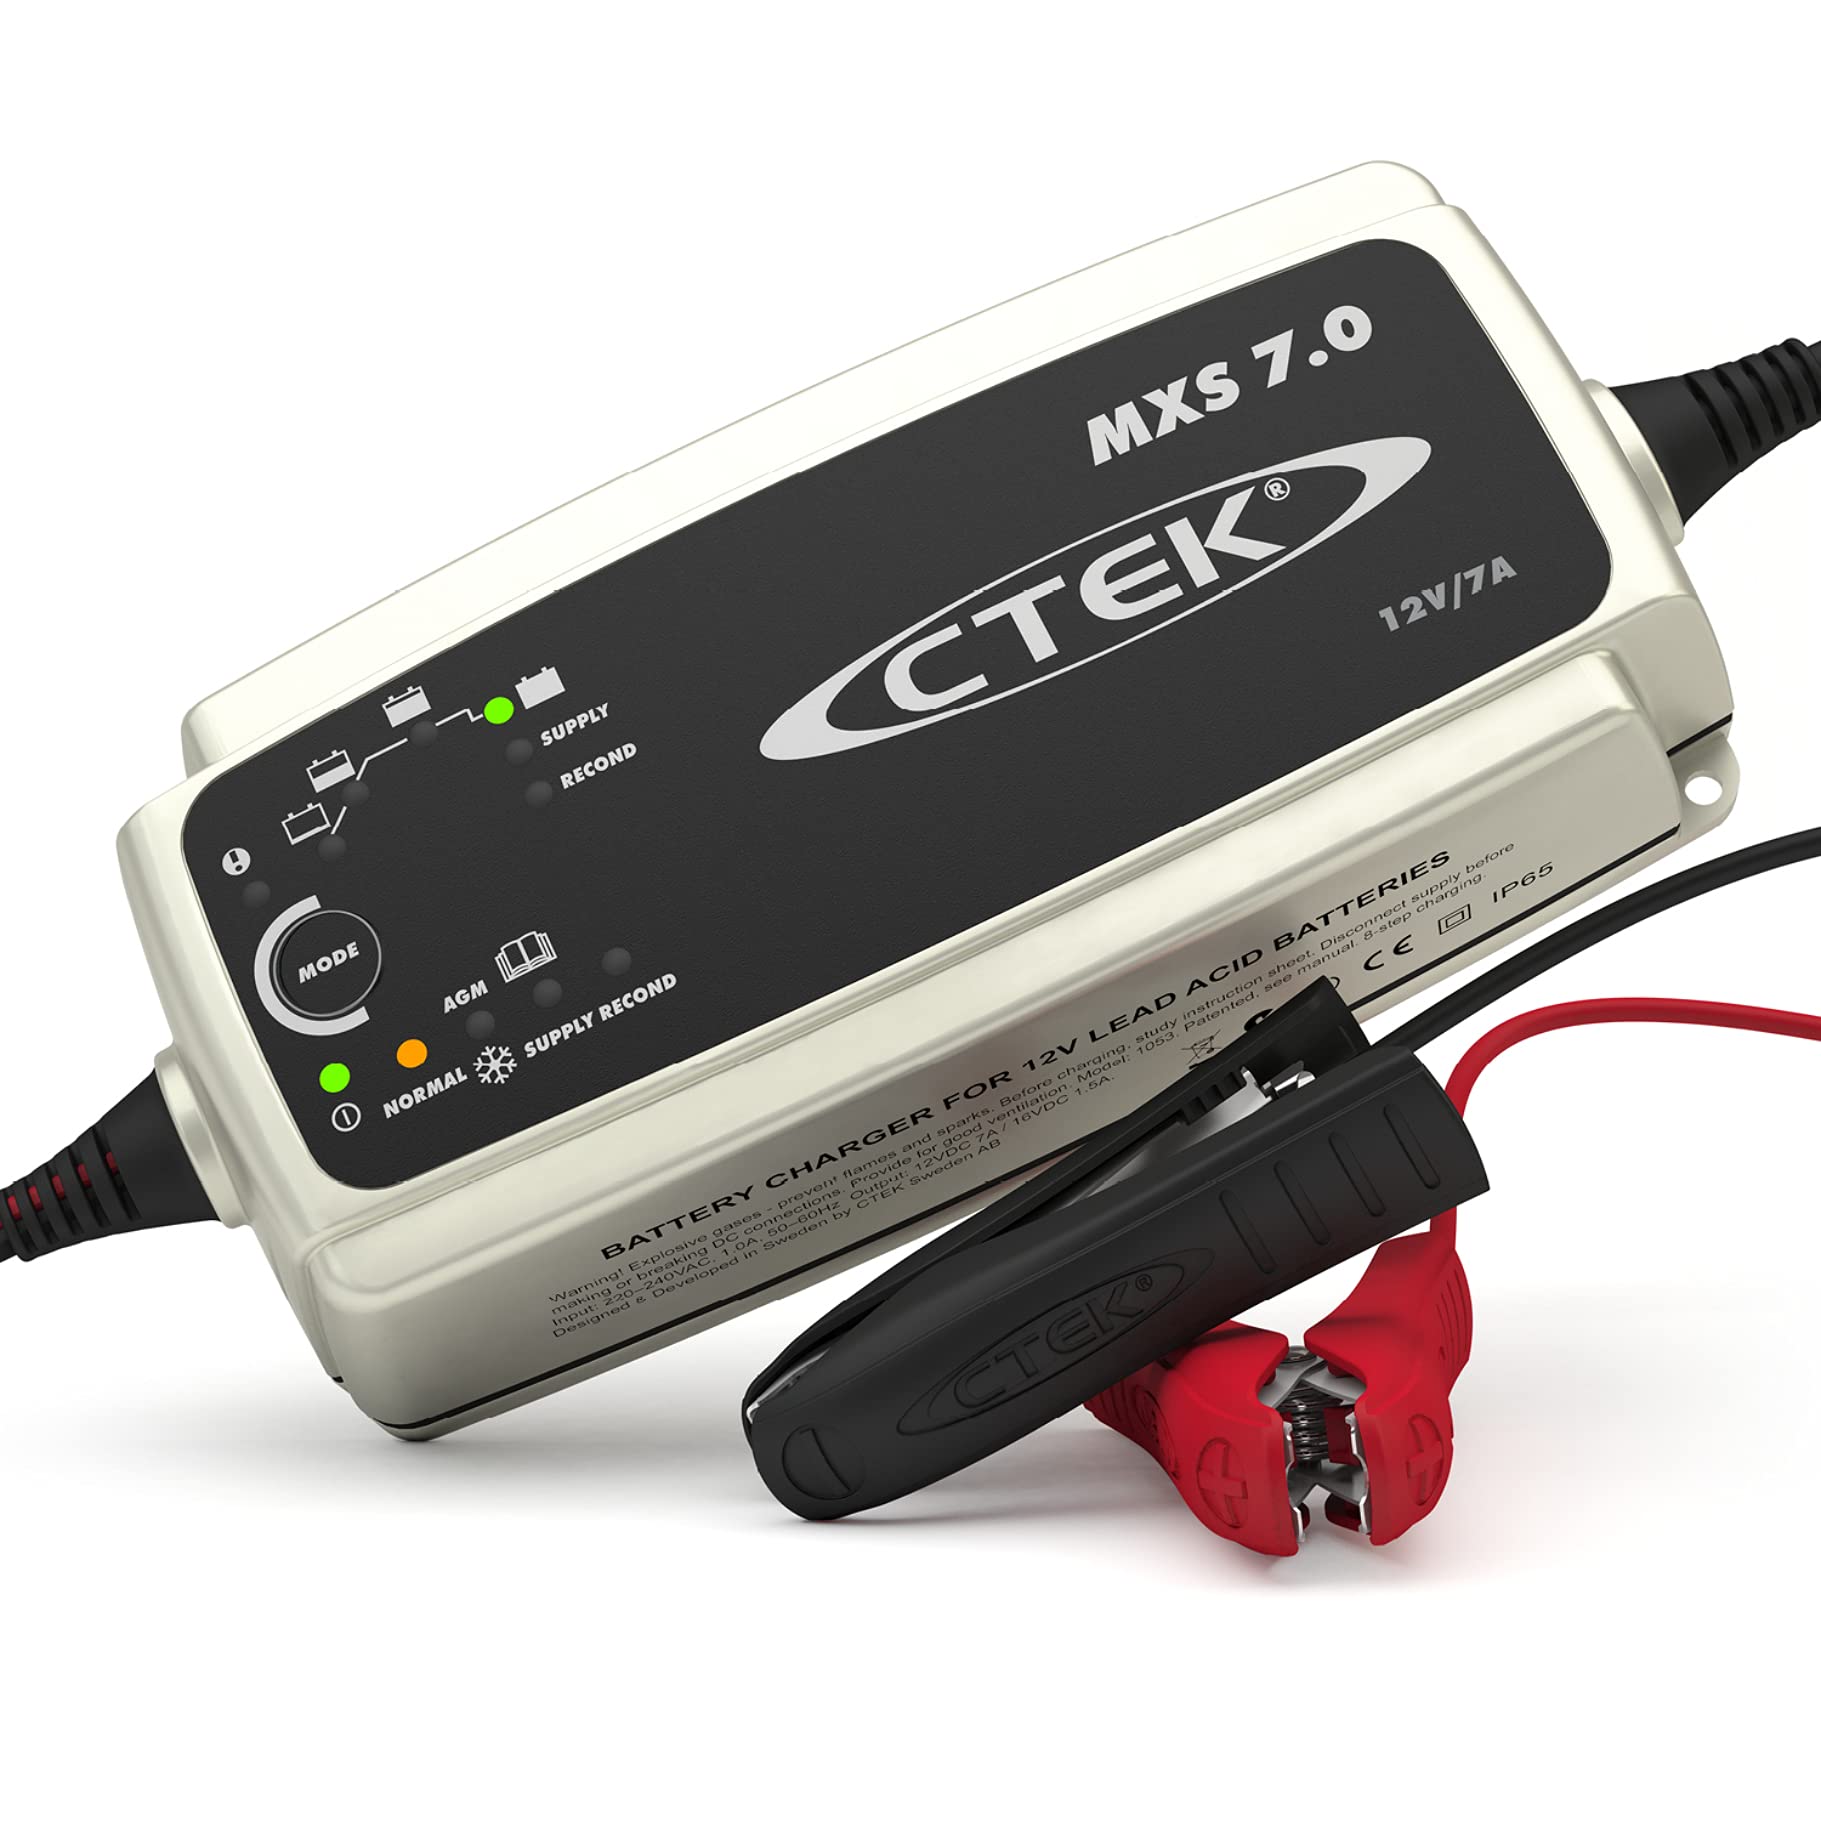 CTEK MXS 7.0, Batterieladegerät 12V Für Größere Fahrzeugbatterien, Batterieladegerät Boot, LKW, Wohnwagen, Wohnmobil Ladegerät, Versorgungsfunktion, Rekonditionierungsmodus Und Winterprogramm von CTEK